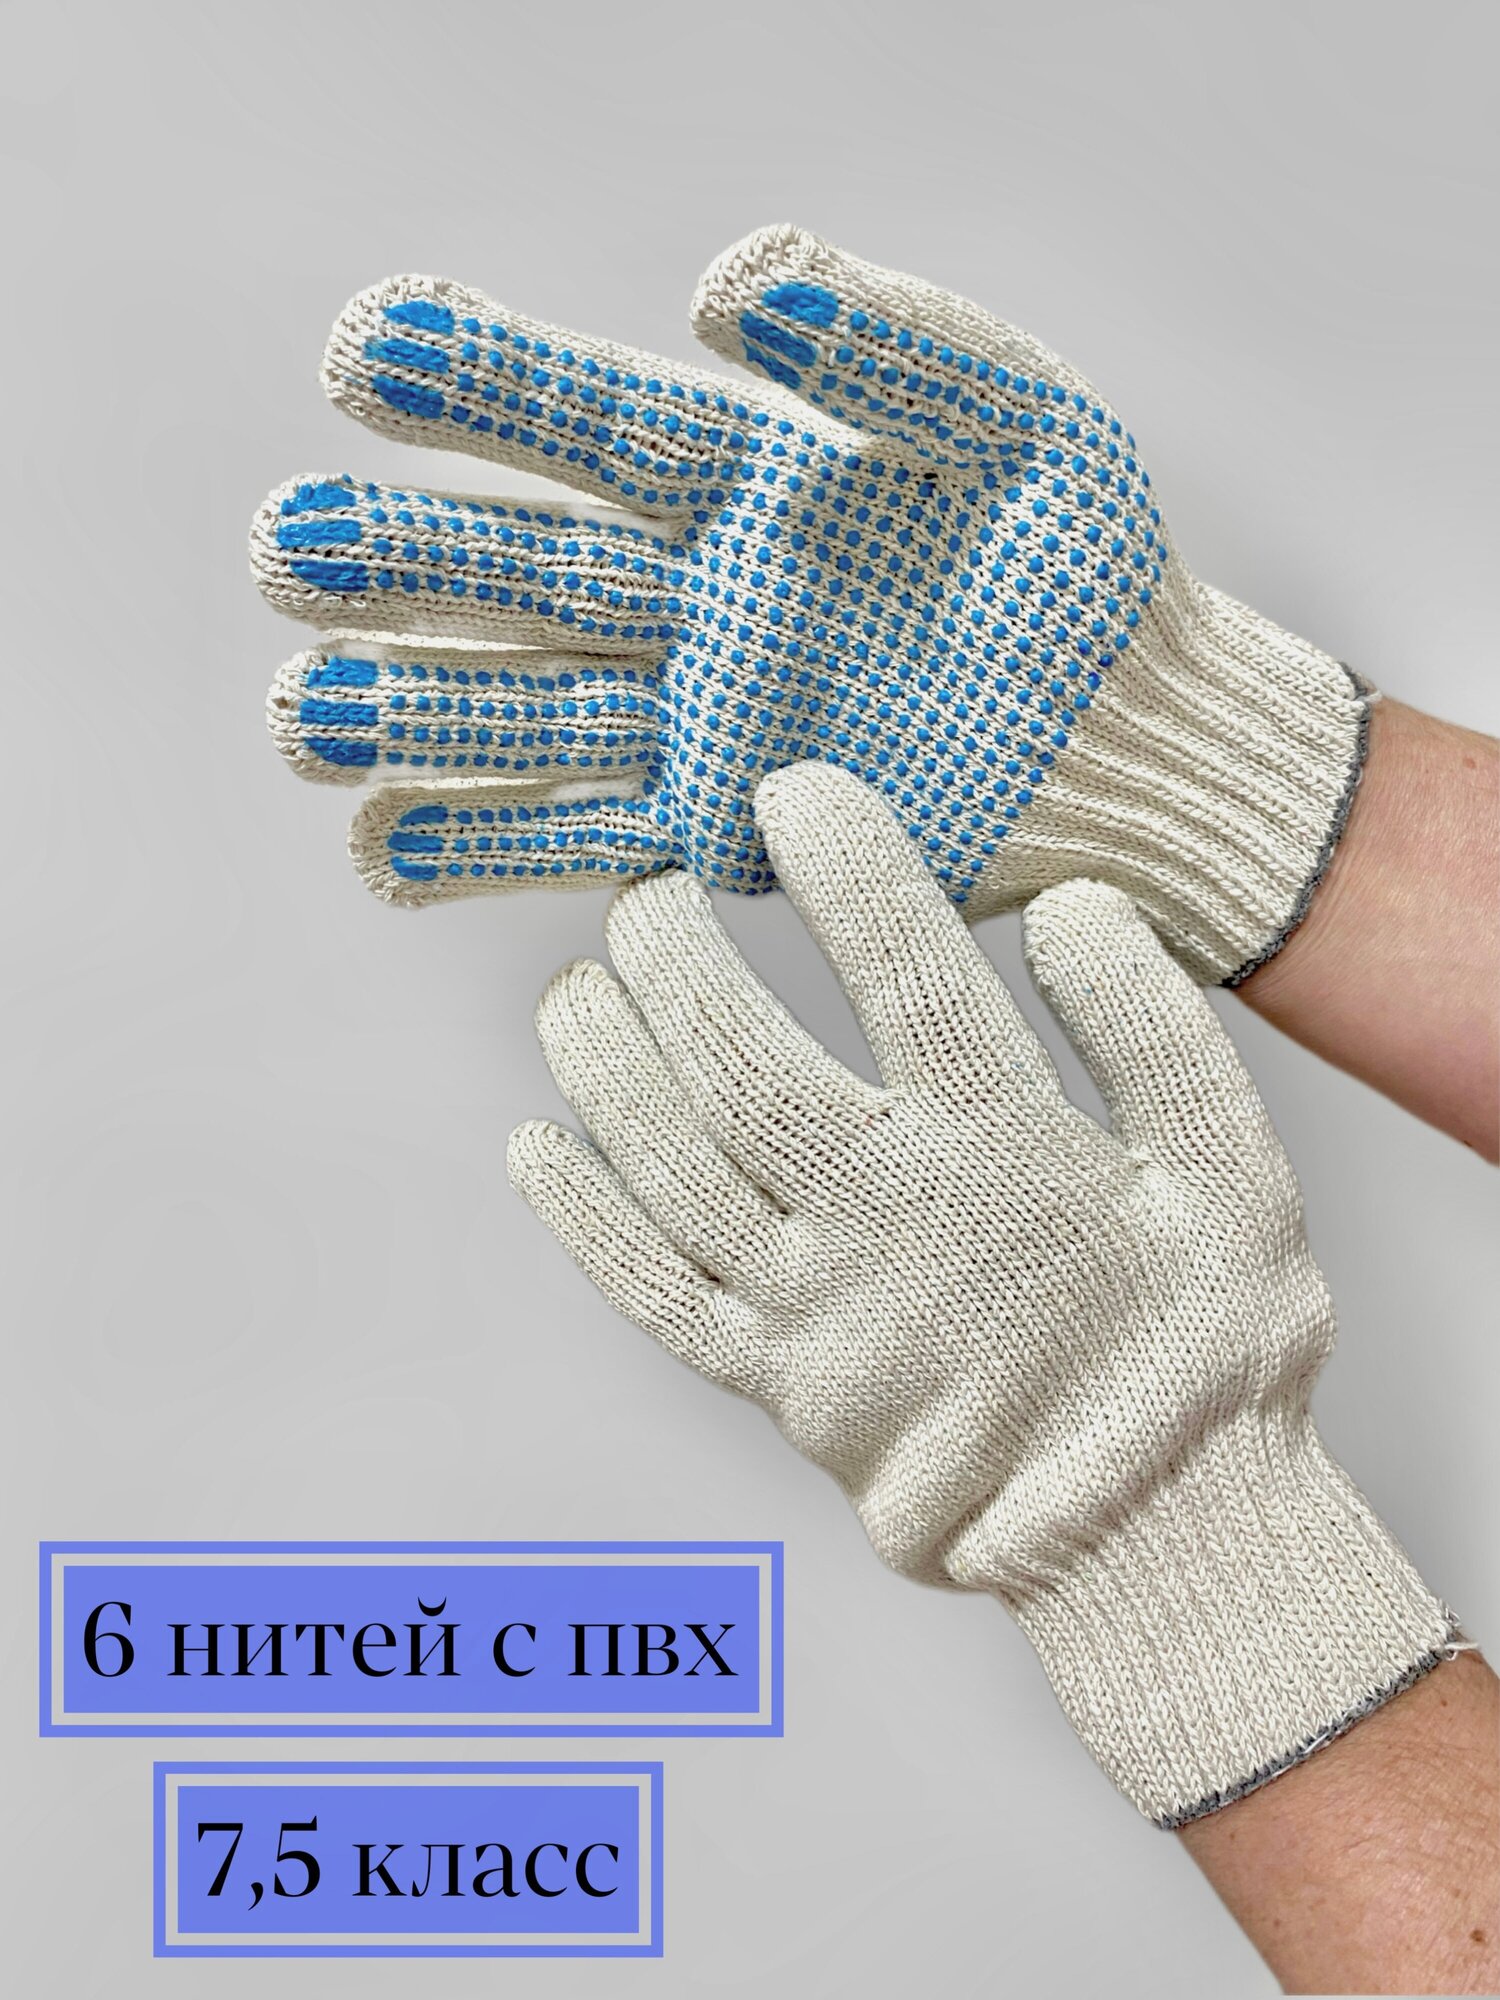 Перчатки рабочие х/б 10 пар, 6 нитей с ПВХ, повышенной плотности 71 гр. (трикотажные хозяйственные) 7,5 класс вязки